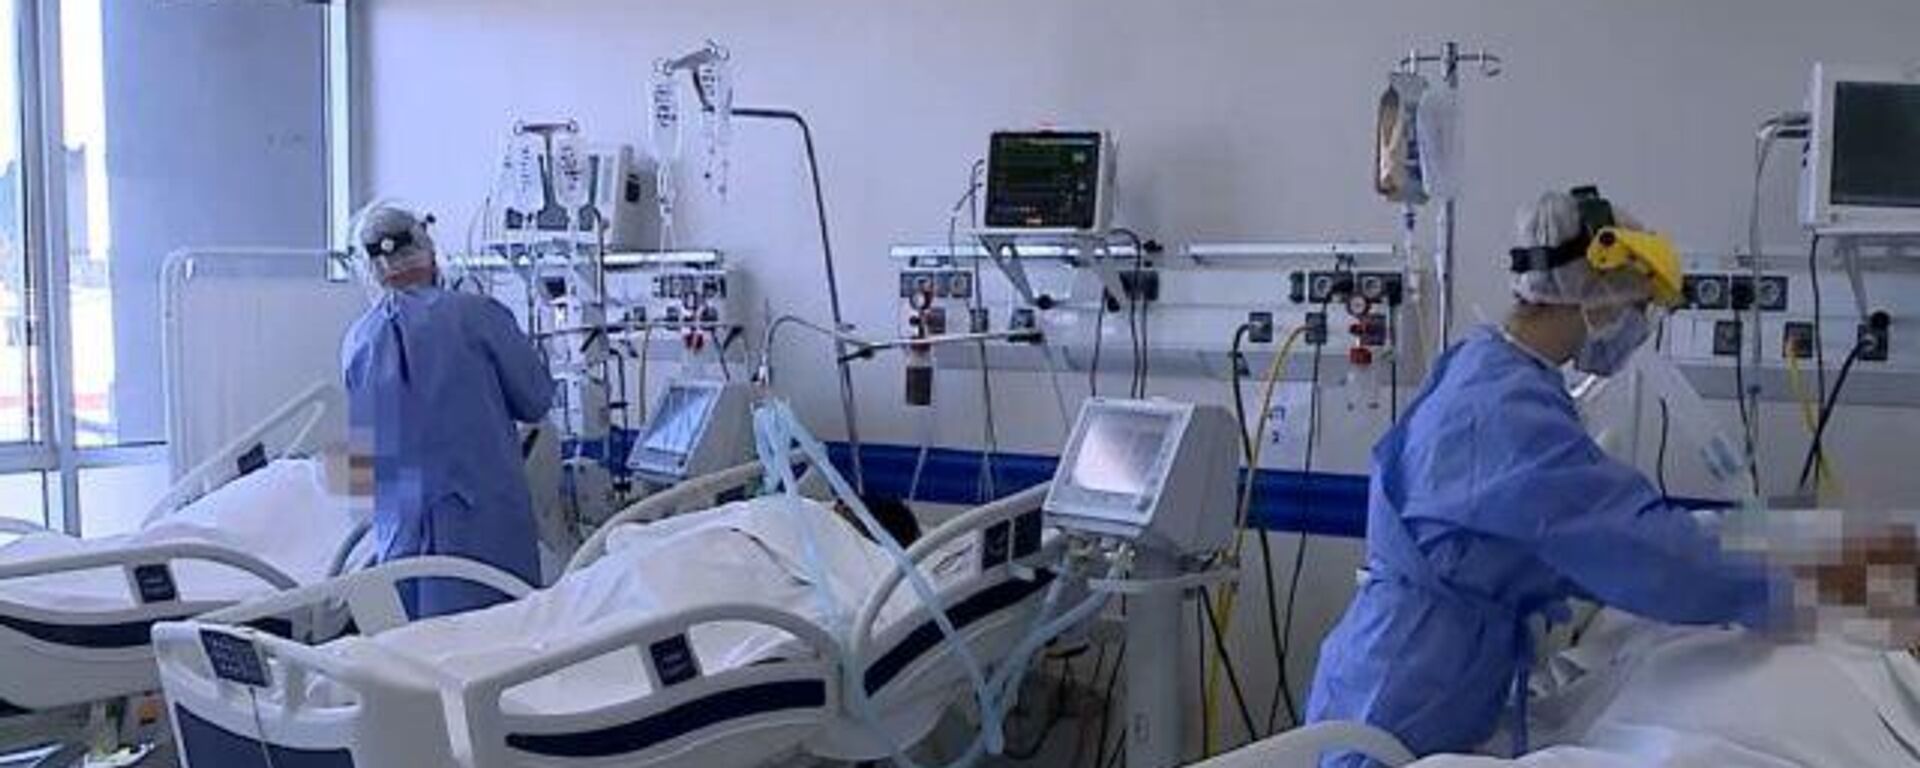 Las unidades de cuidados intensivos están llenas y los casos por COVID-19 aumentan en Argentina - Sputnik Mundo, 1920, 04.06.2021